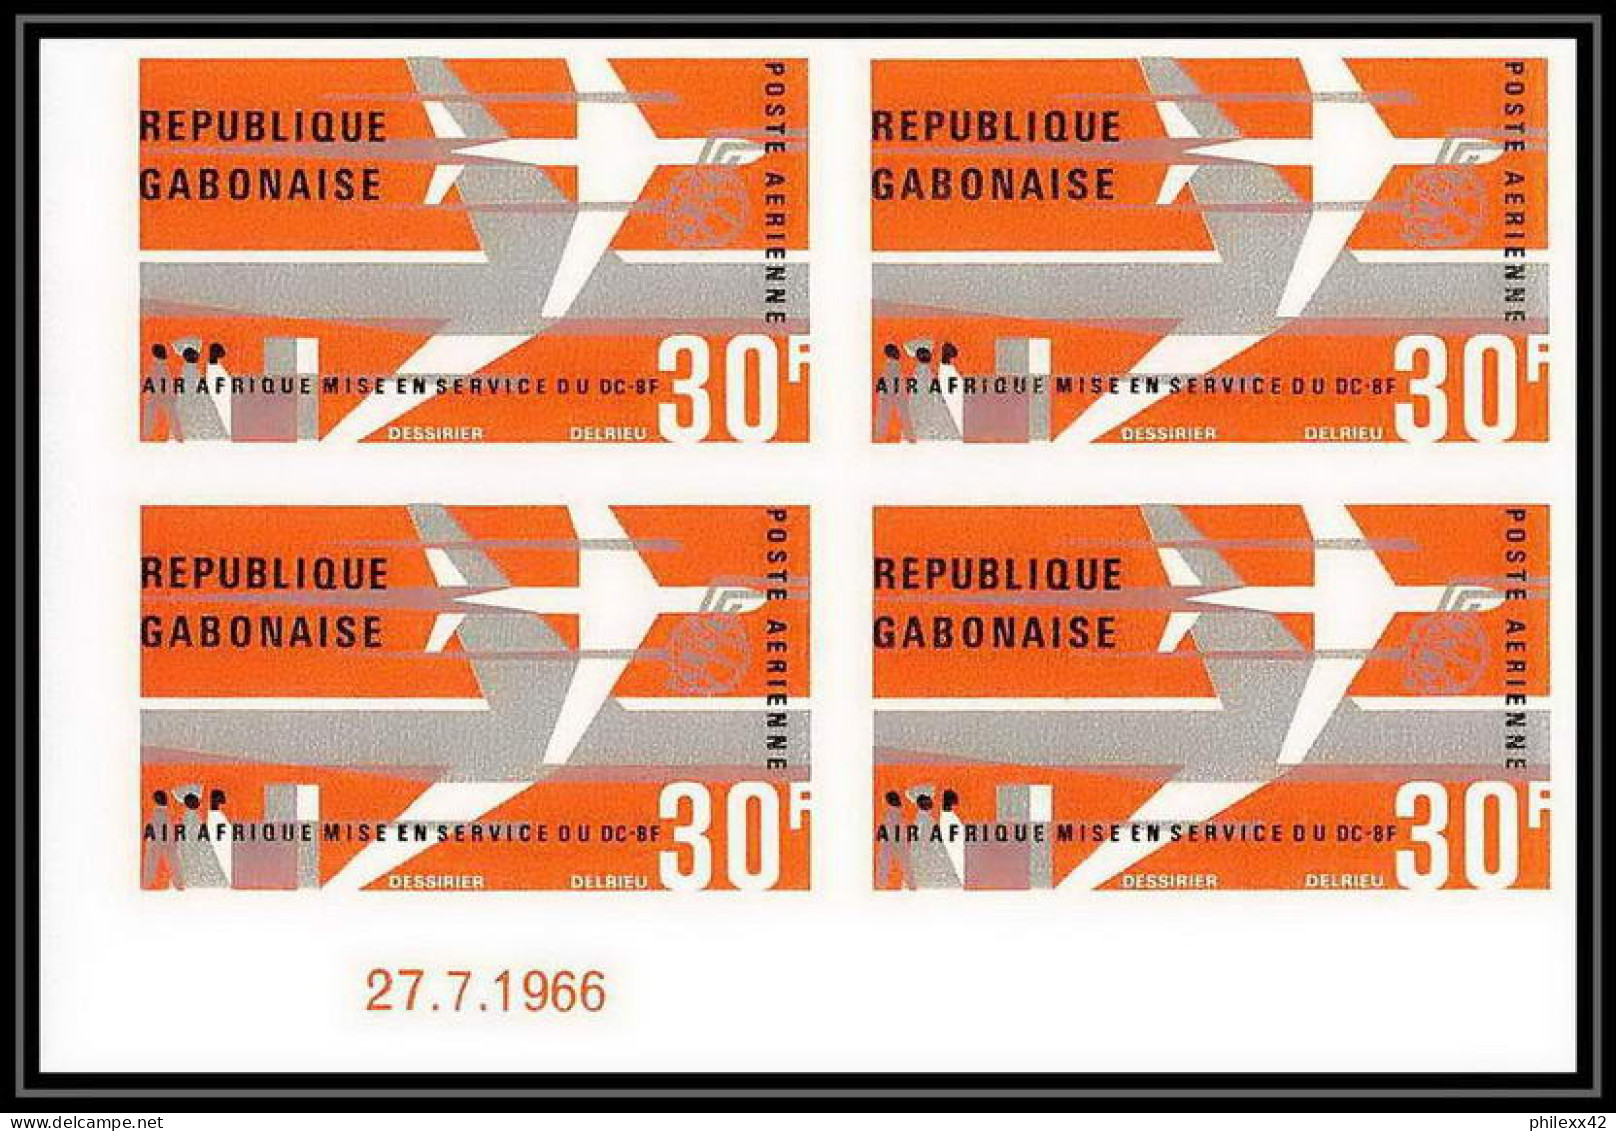 92105 Gabon (gabonaise) Poste Aérienne PA N°49 Avion Dc-8f Air Afrique 1966 Coin Daté Non Dentelé Imperf ** MNH Aviation - Emissions Communes